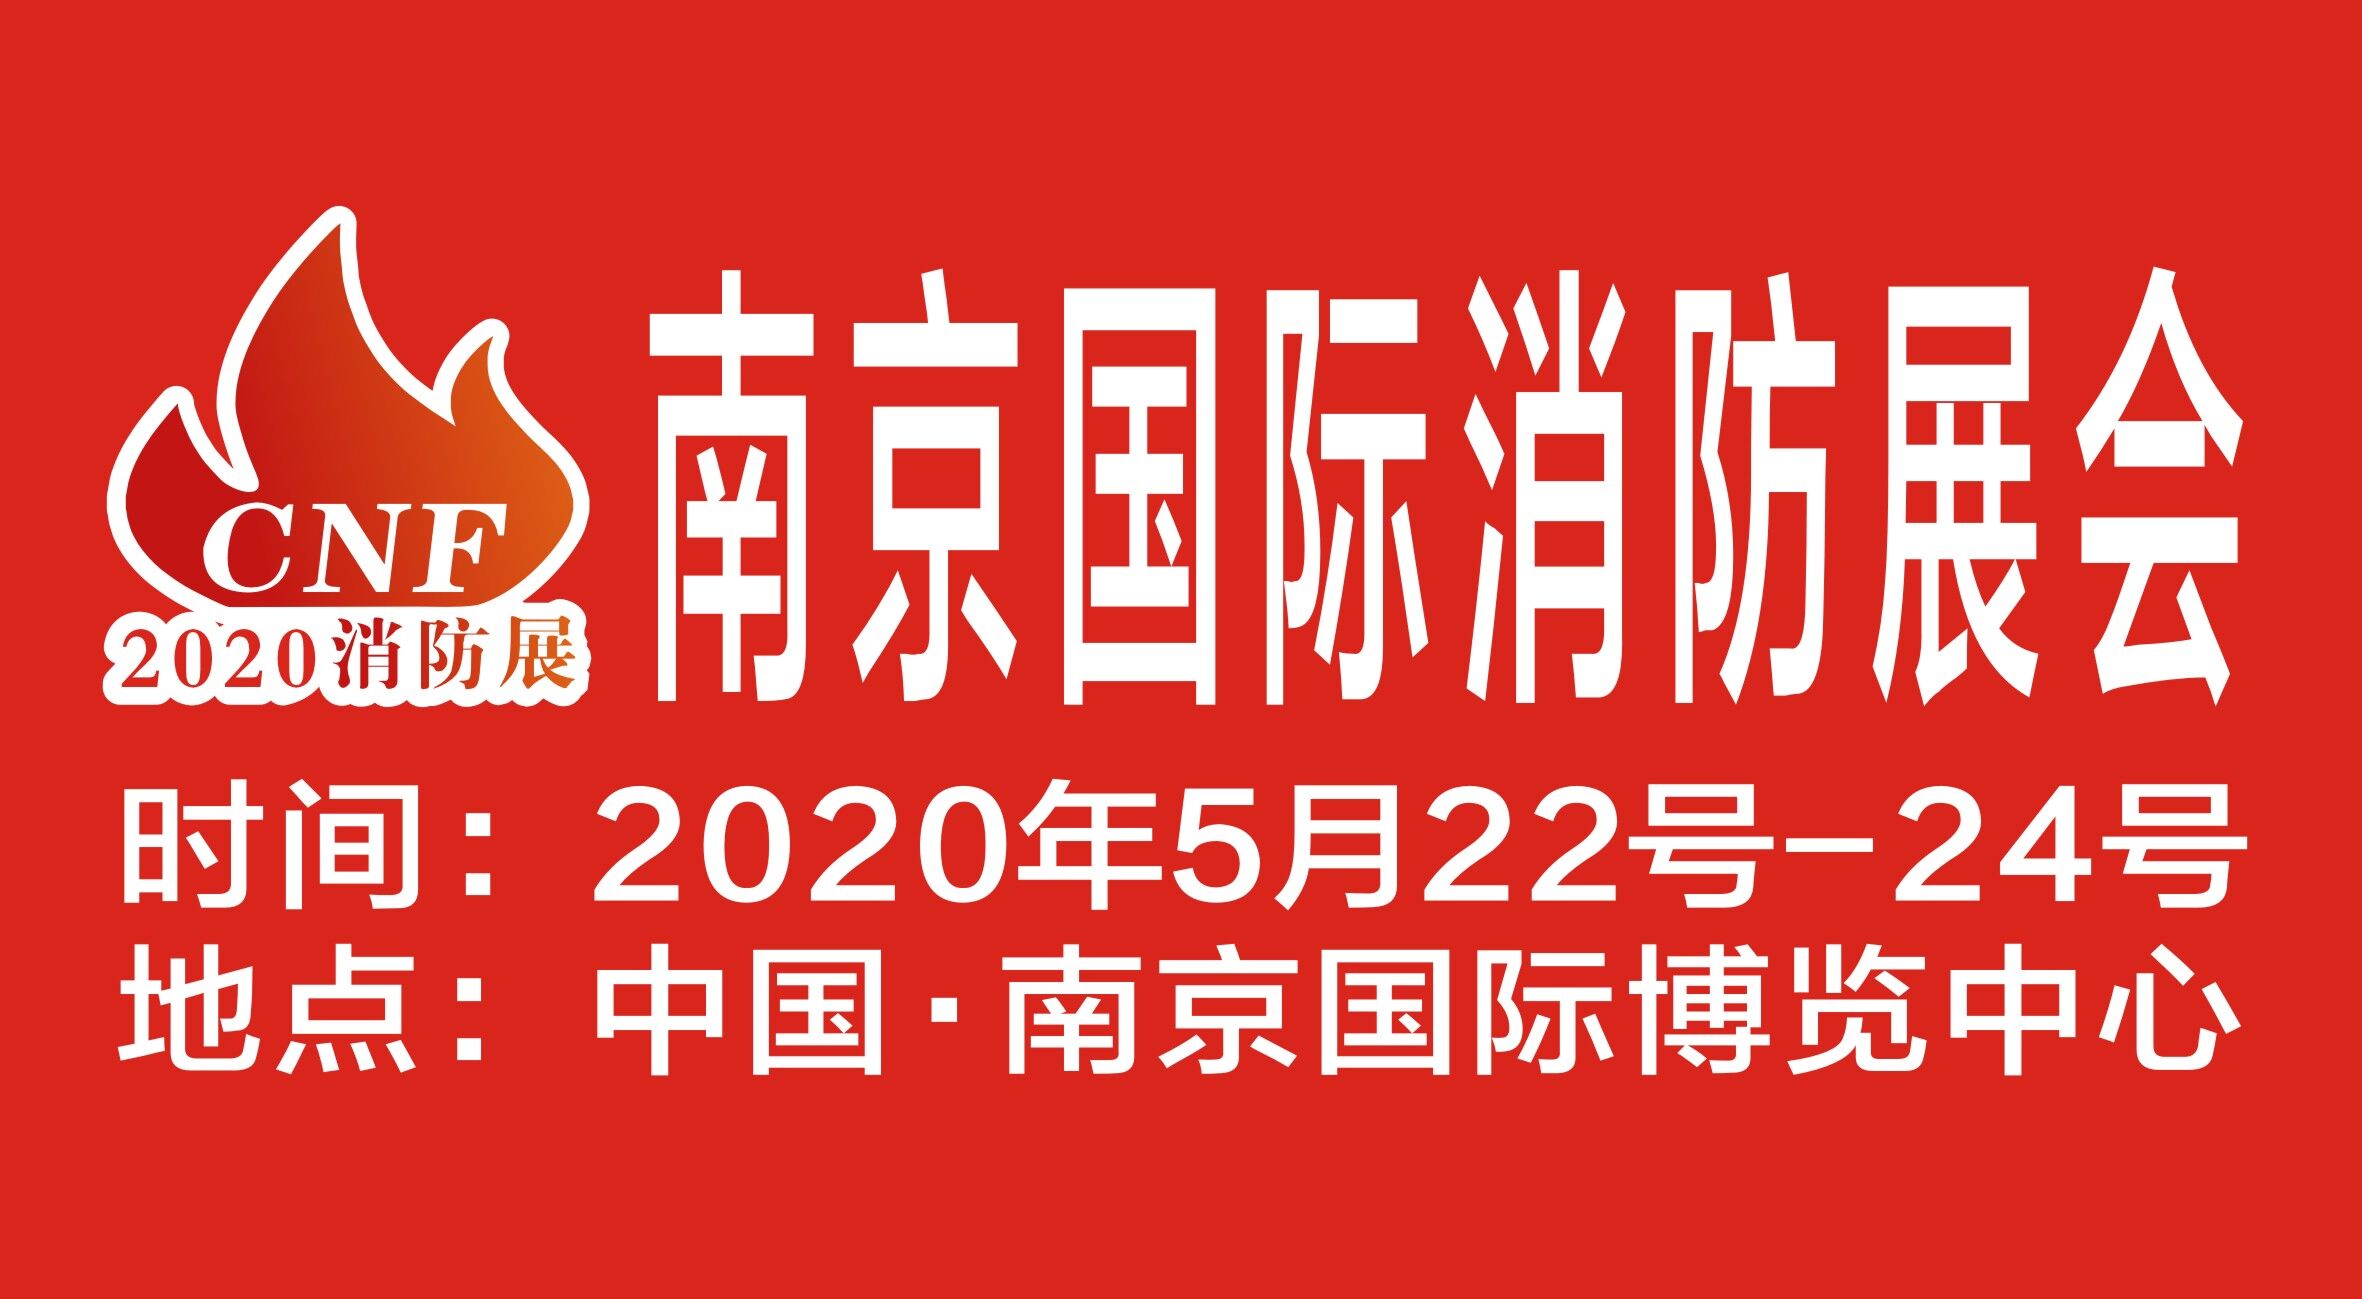 CNF南京消防展提示——选择展会一定要认清平台！！！